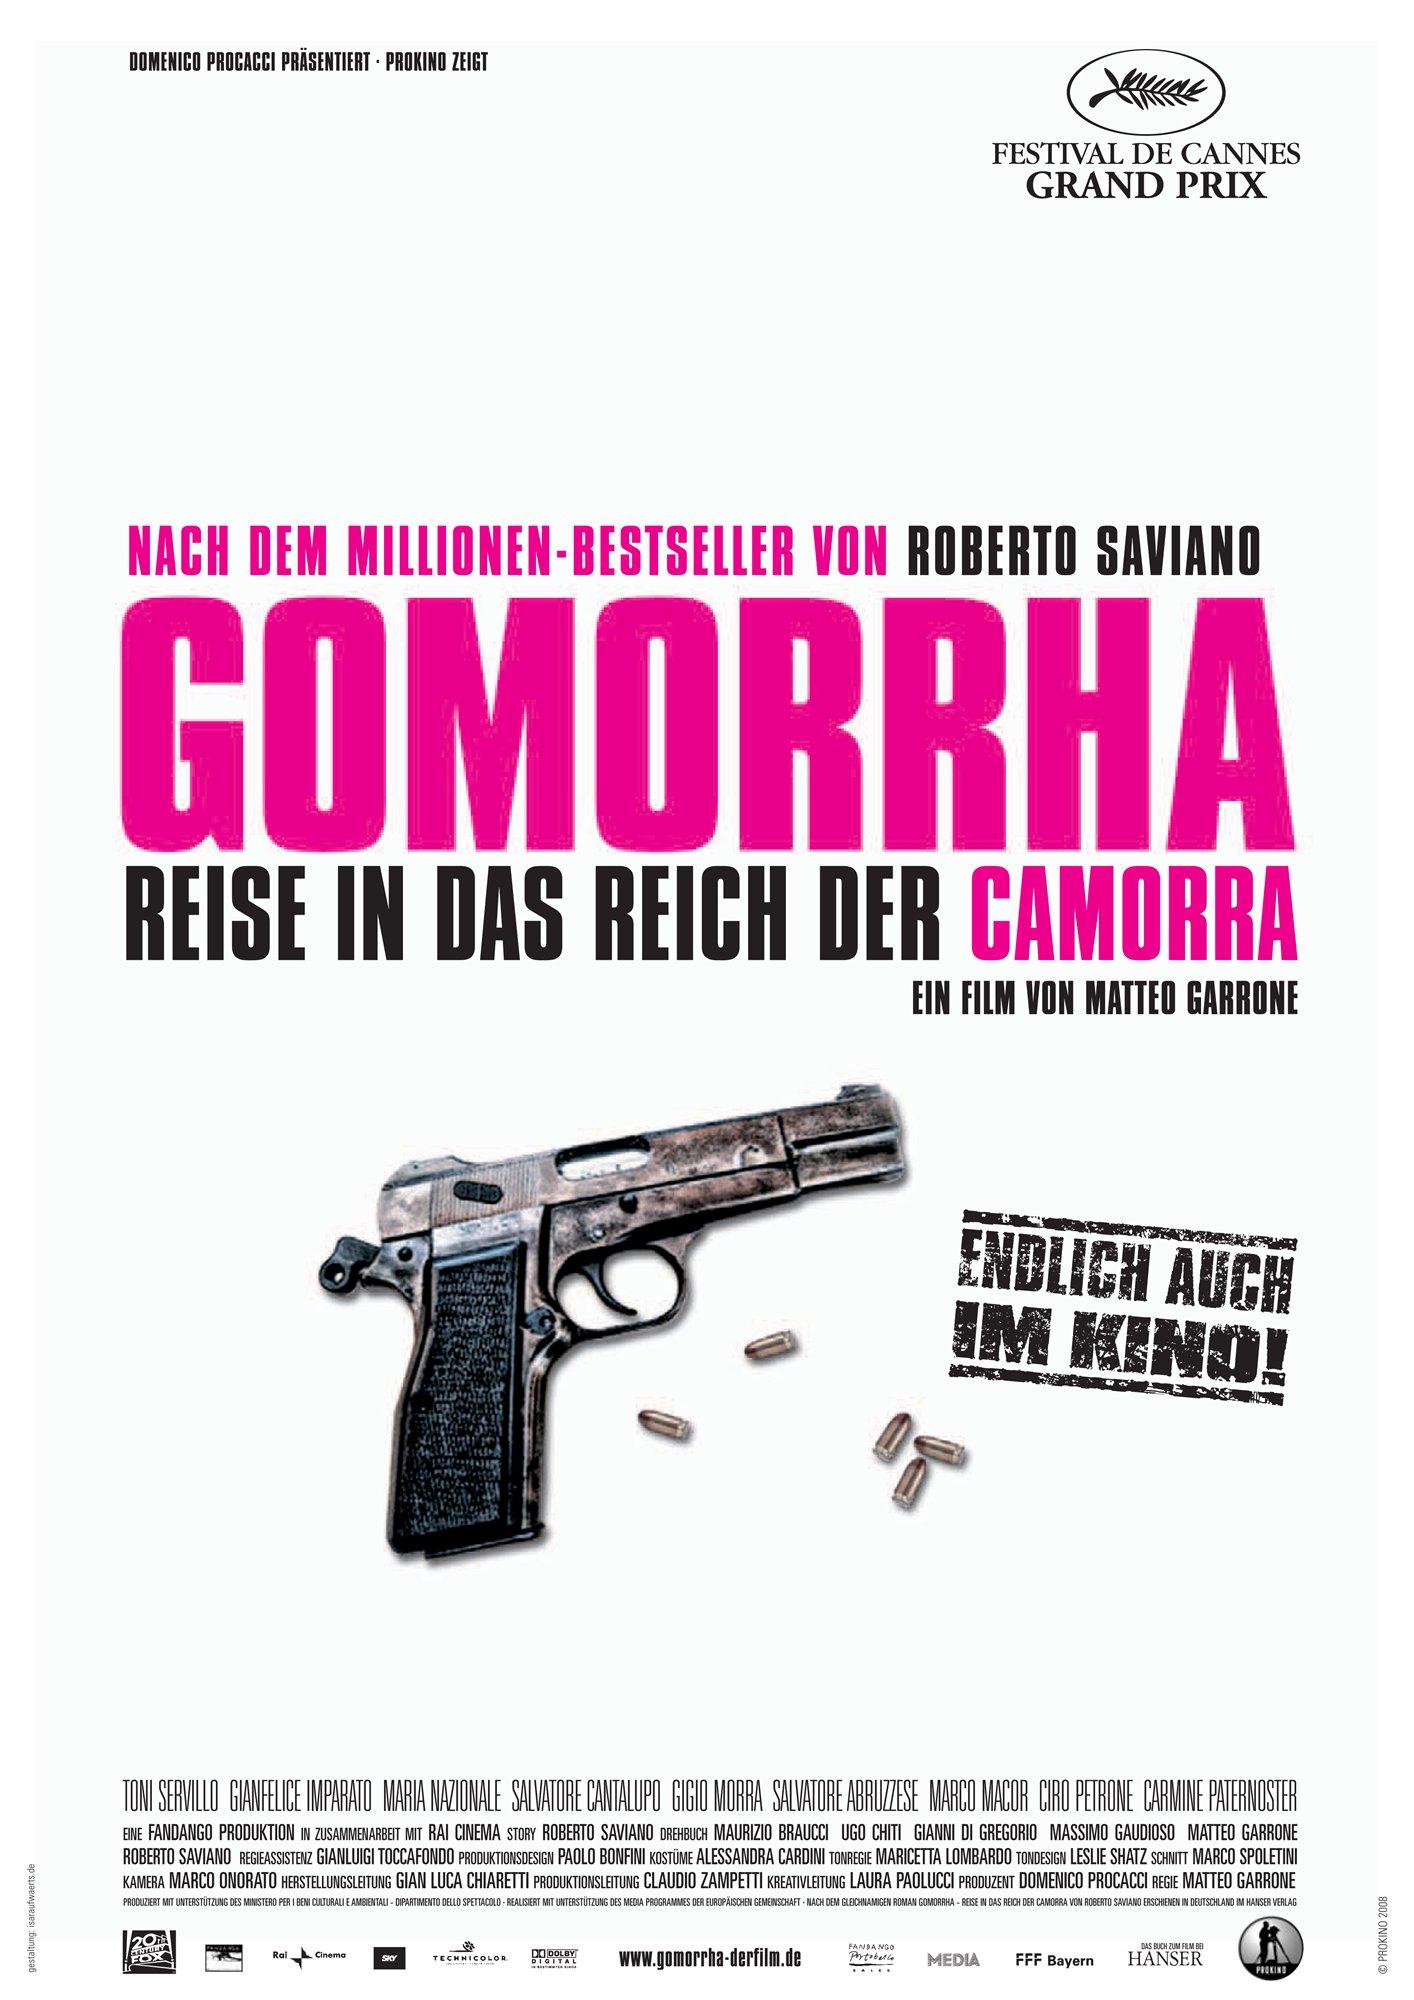 Постер фильма Гоморра | Gomorra